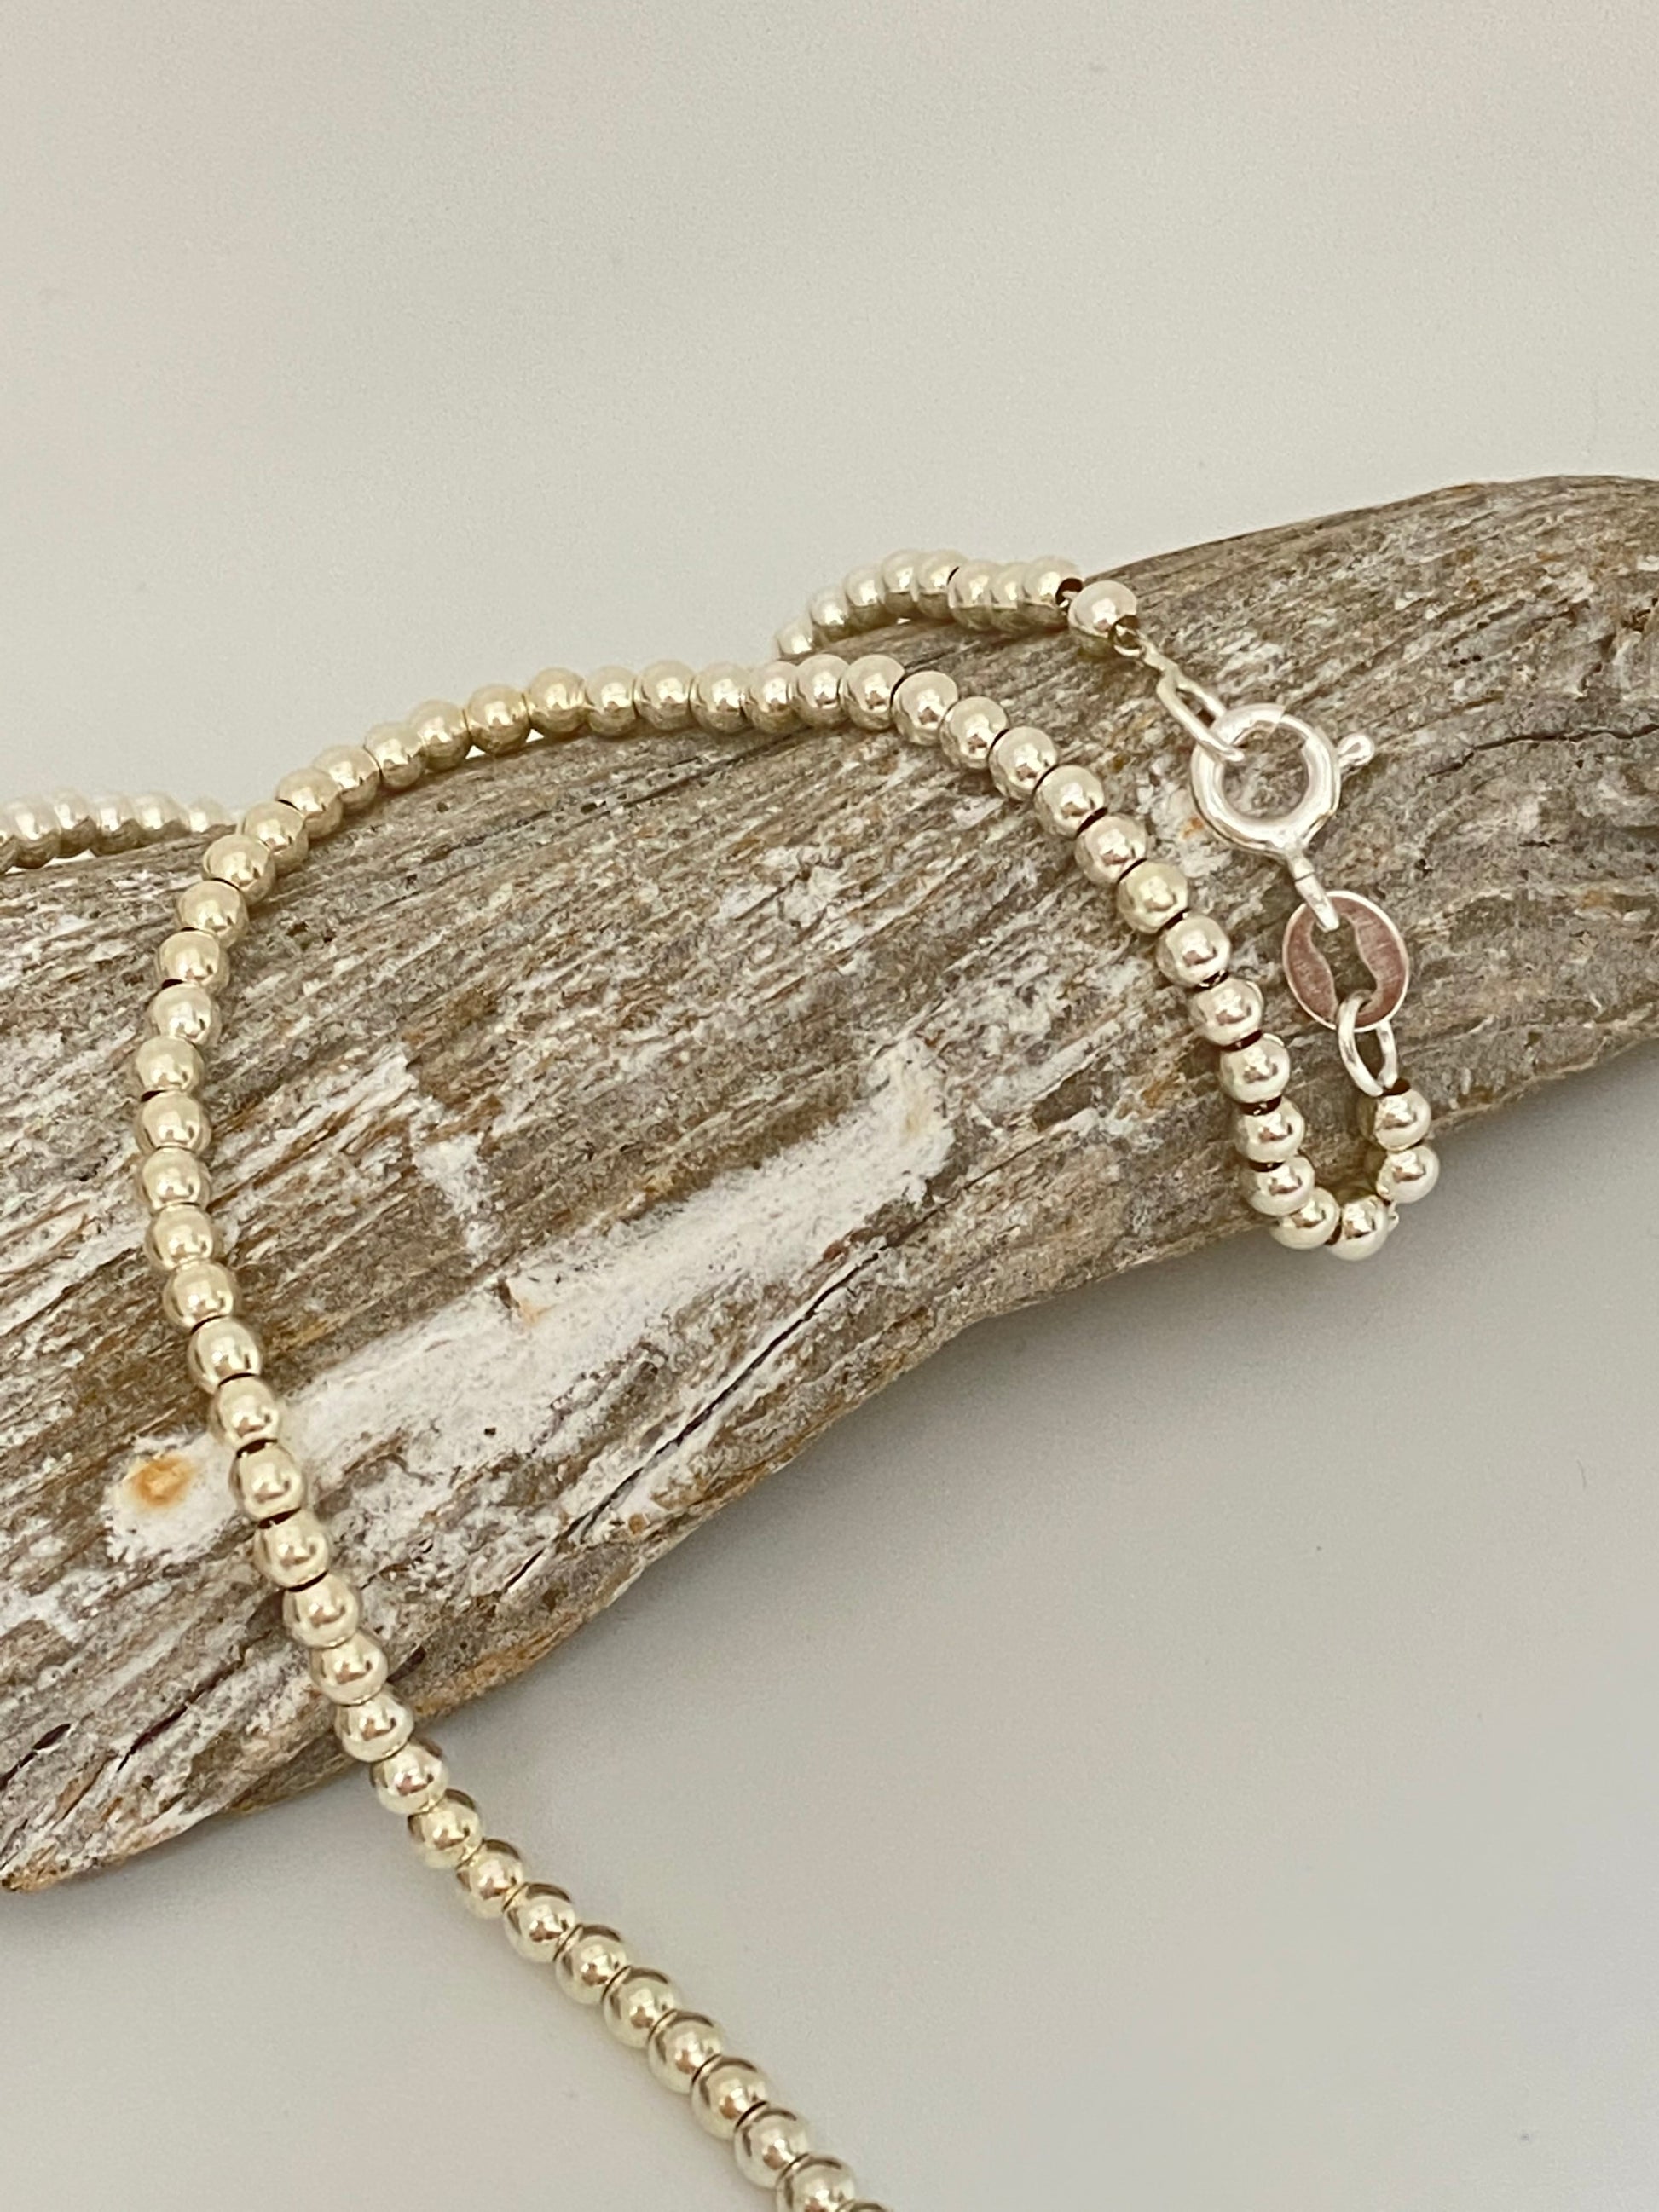 Simple Dainty Silver Bead Necklace Fait à la main à Montréal  Camillette